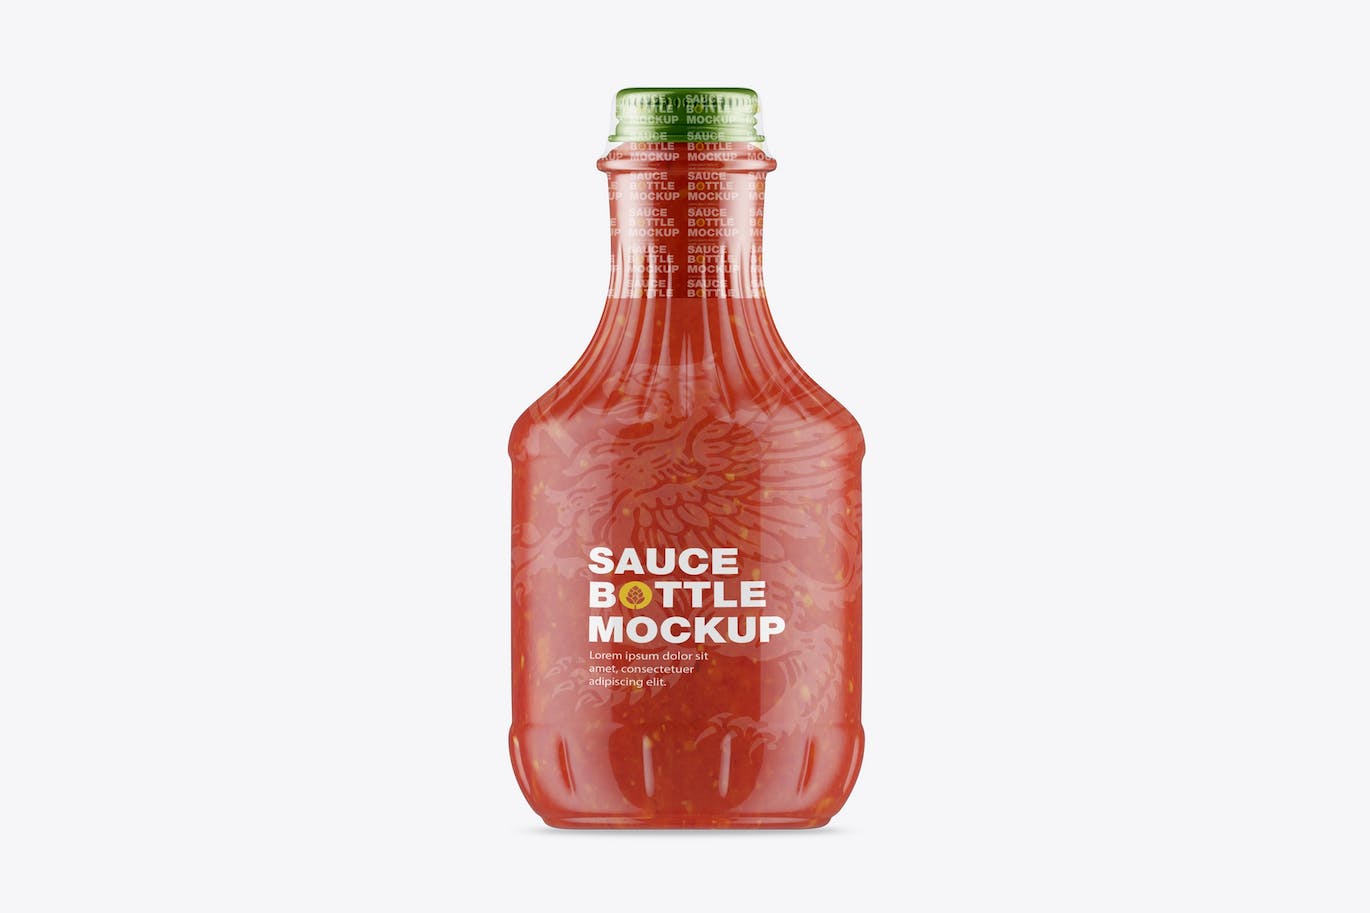 酱油瓶包装设计样机 Sauce Bottle Mockup 样机素材 第1张